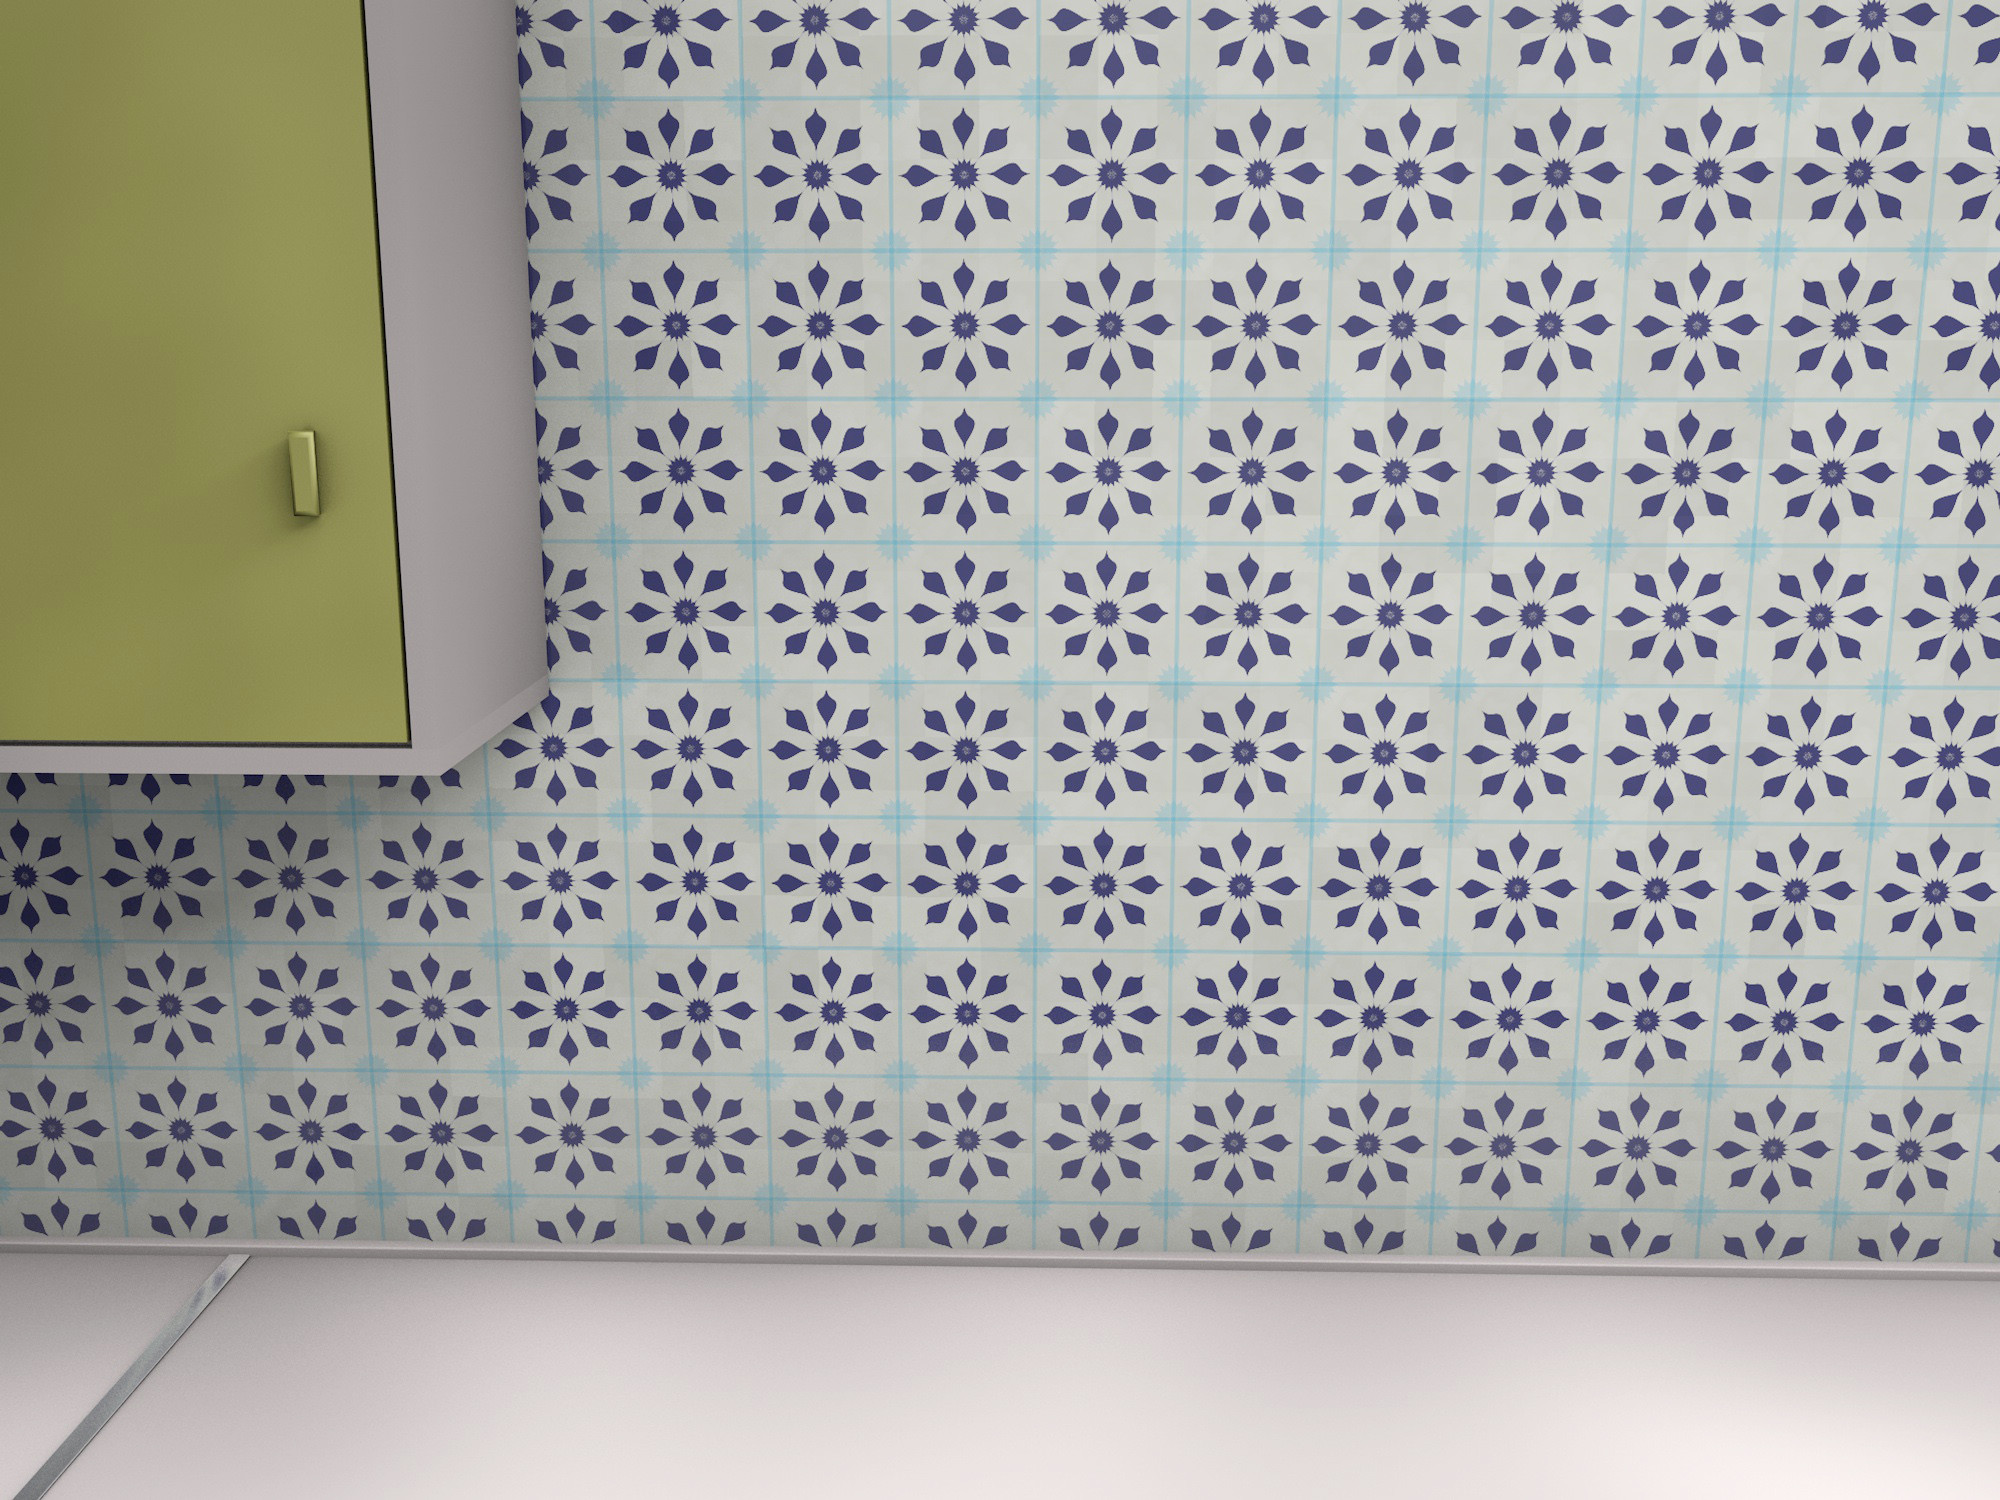 2000x1500 1950s tile wallpaper pattern